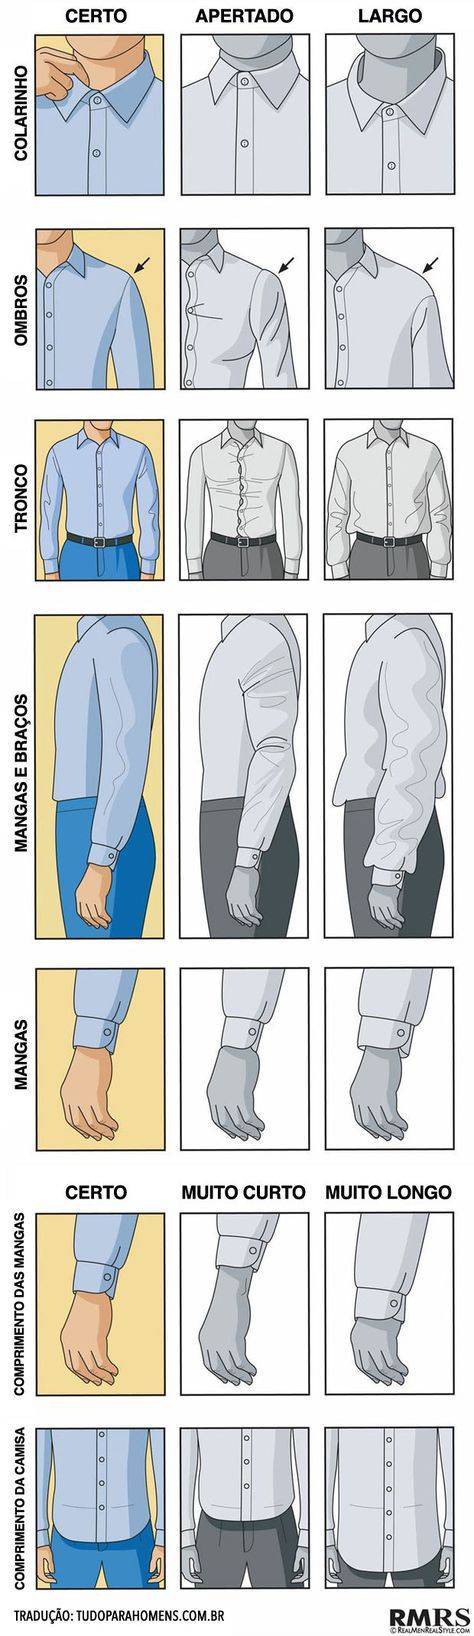 Как определить размер мужской рубашки: таблица размеров и метод по вороту